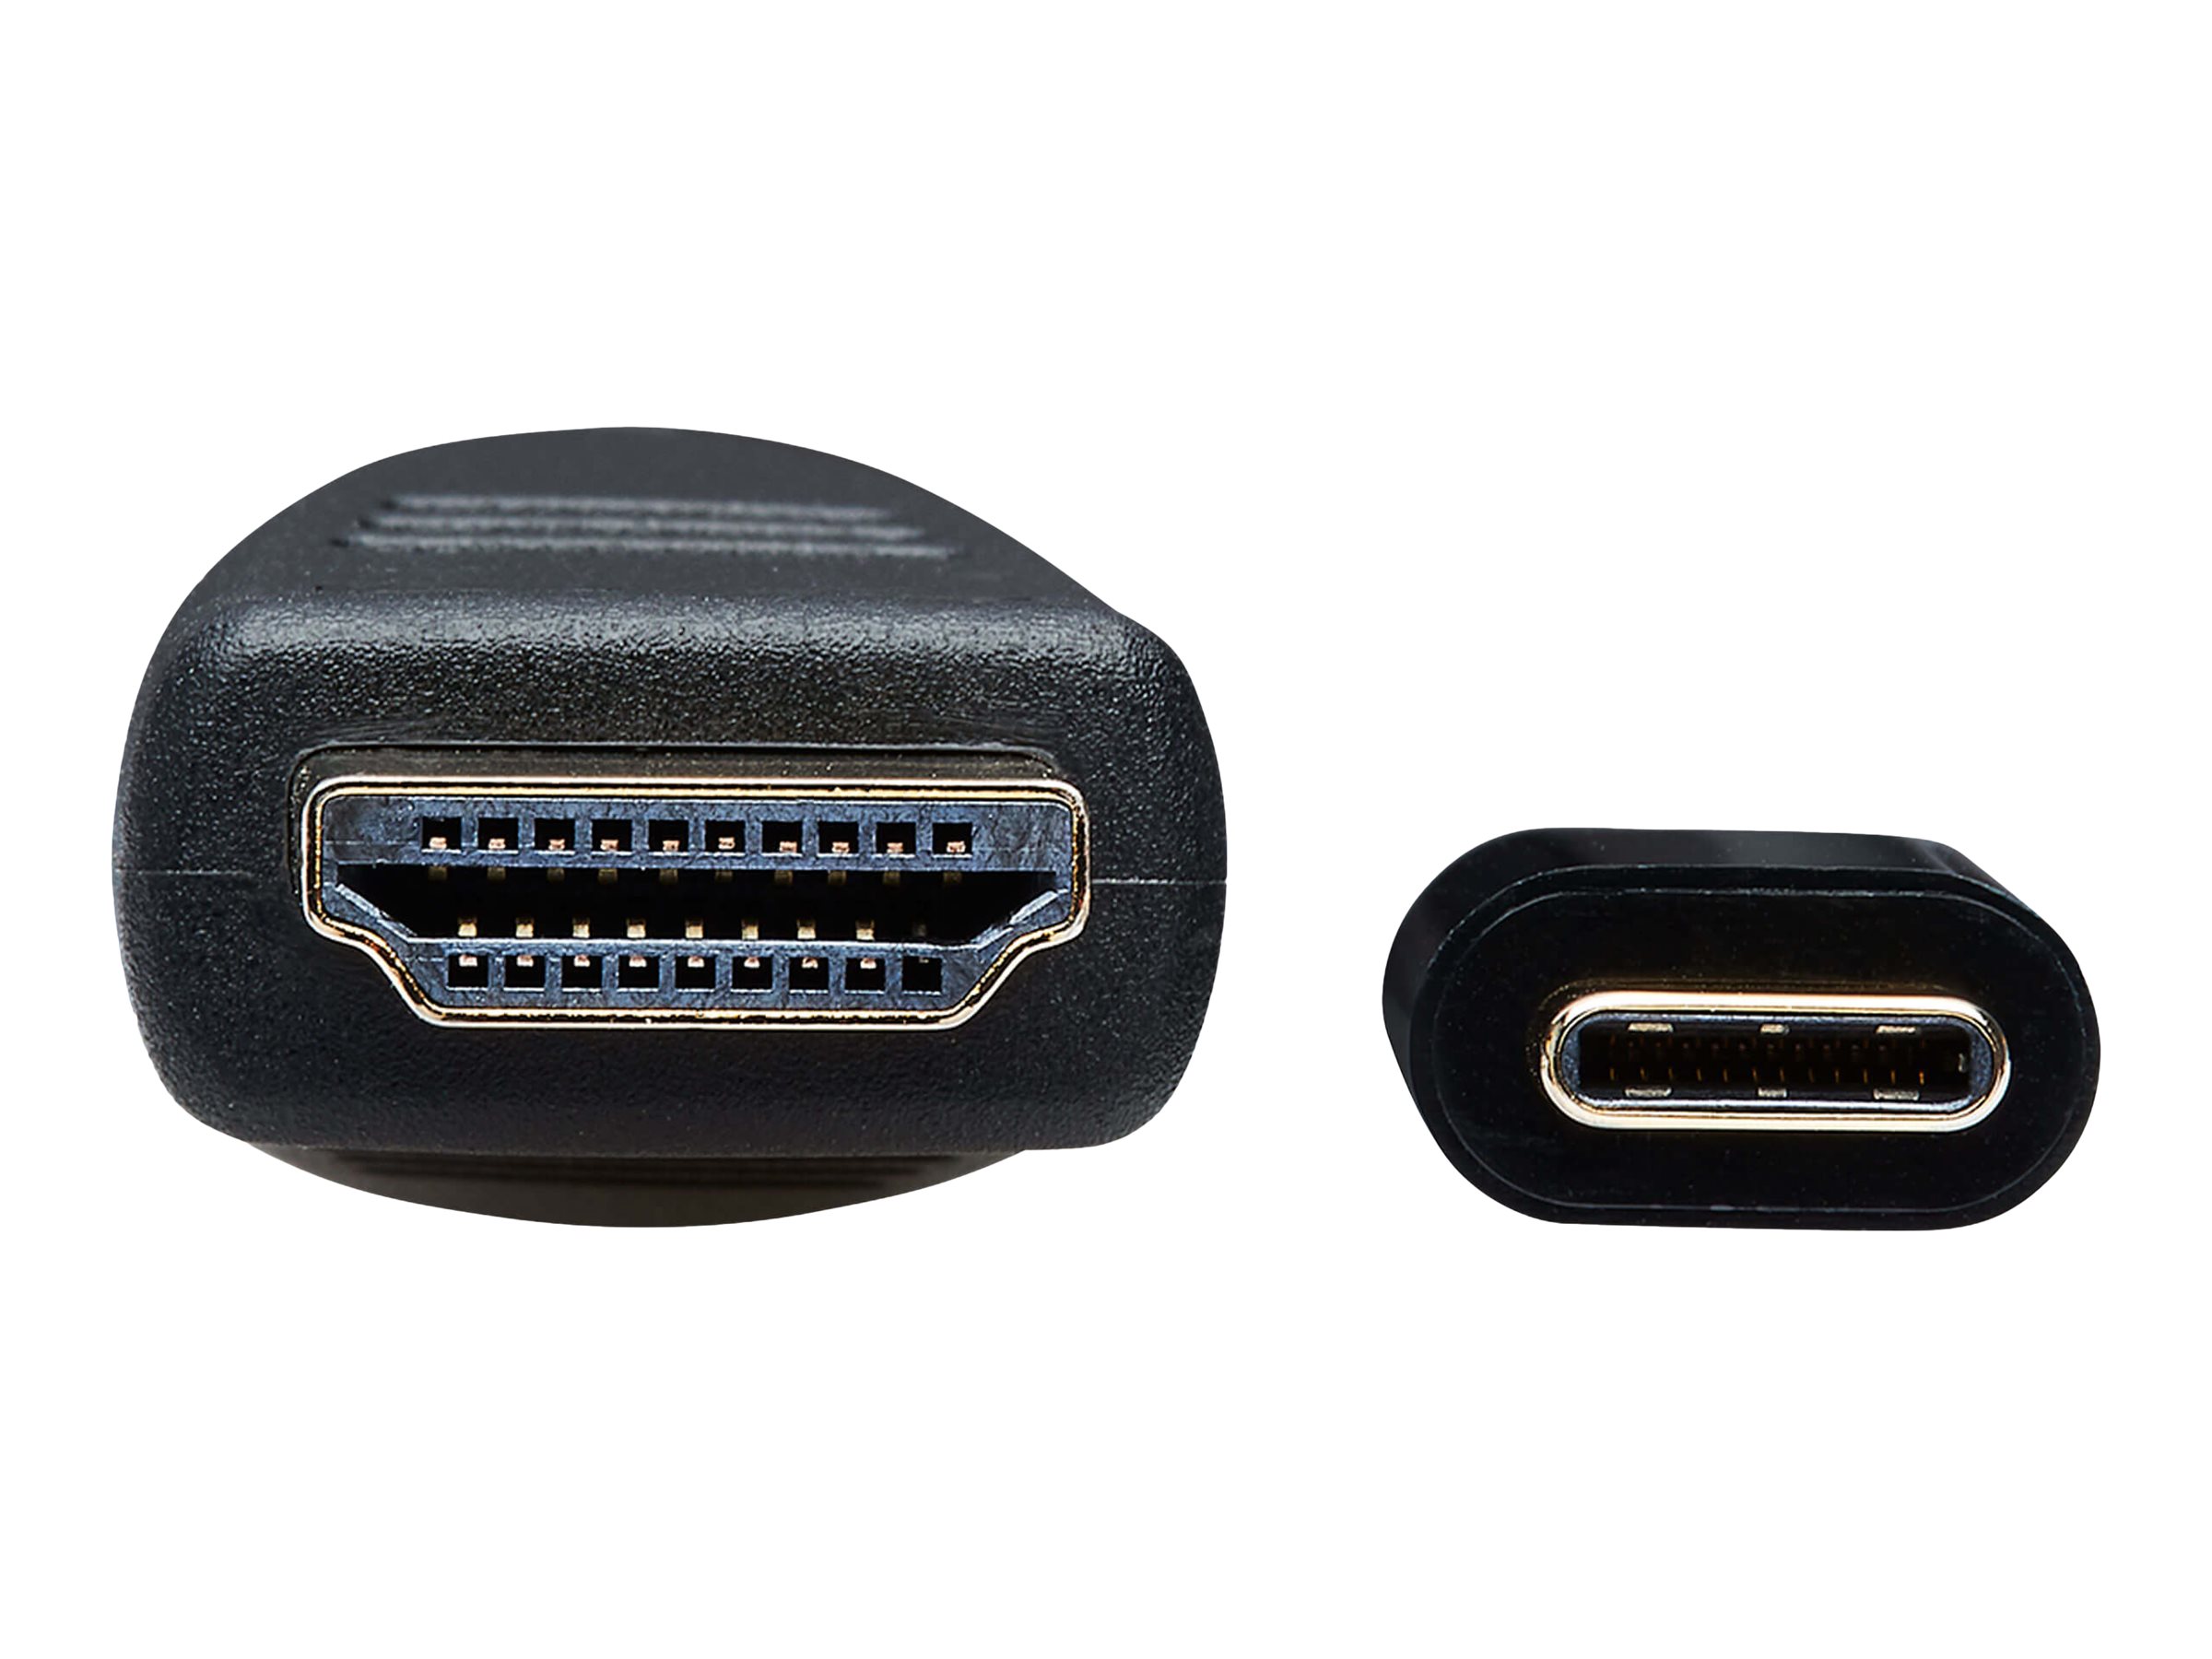 Tripp Lite USB C to HDMI Adapter Cable USB 3.1 4K@60Hz M/M USB-C Black 15ft - Câble vidéo - HDMI mâle pour 24 pin USB-C mâle reversible - 4.6 m - noir - support 4K - U444-015-H4K6BM - Câbles HDMI